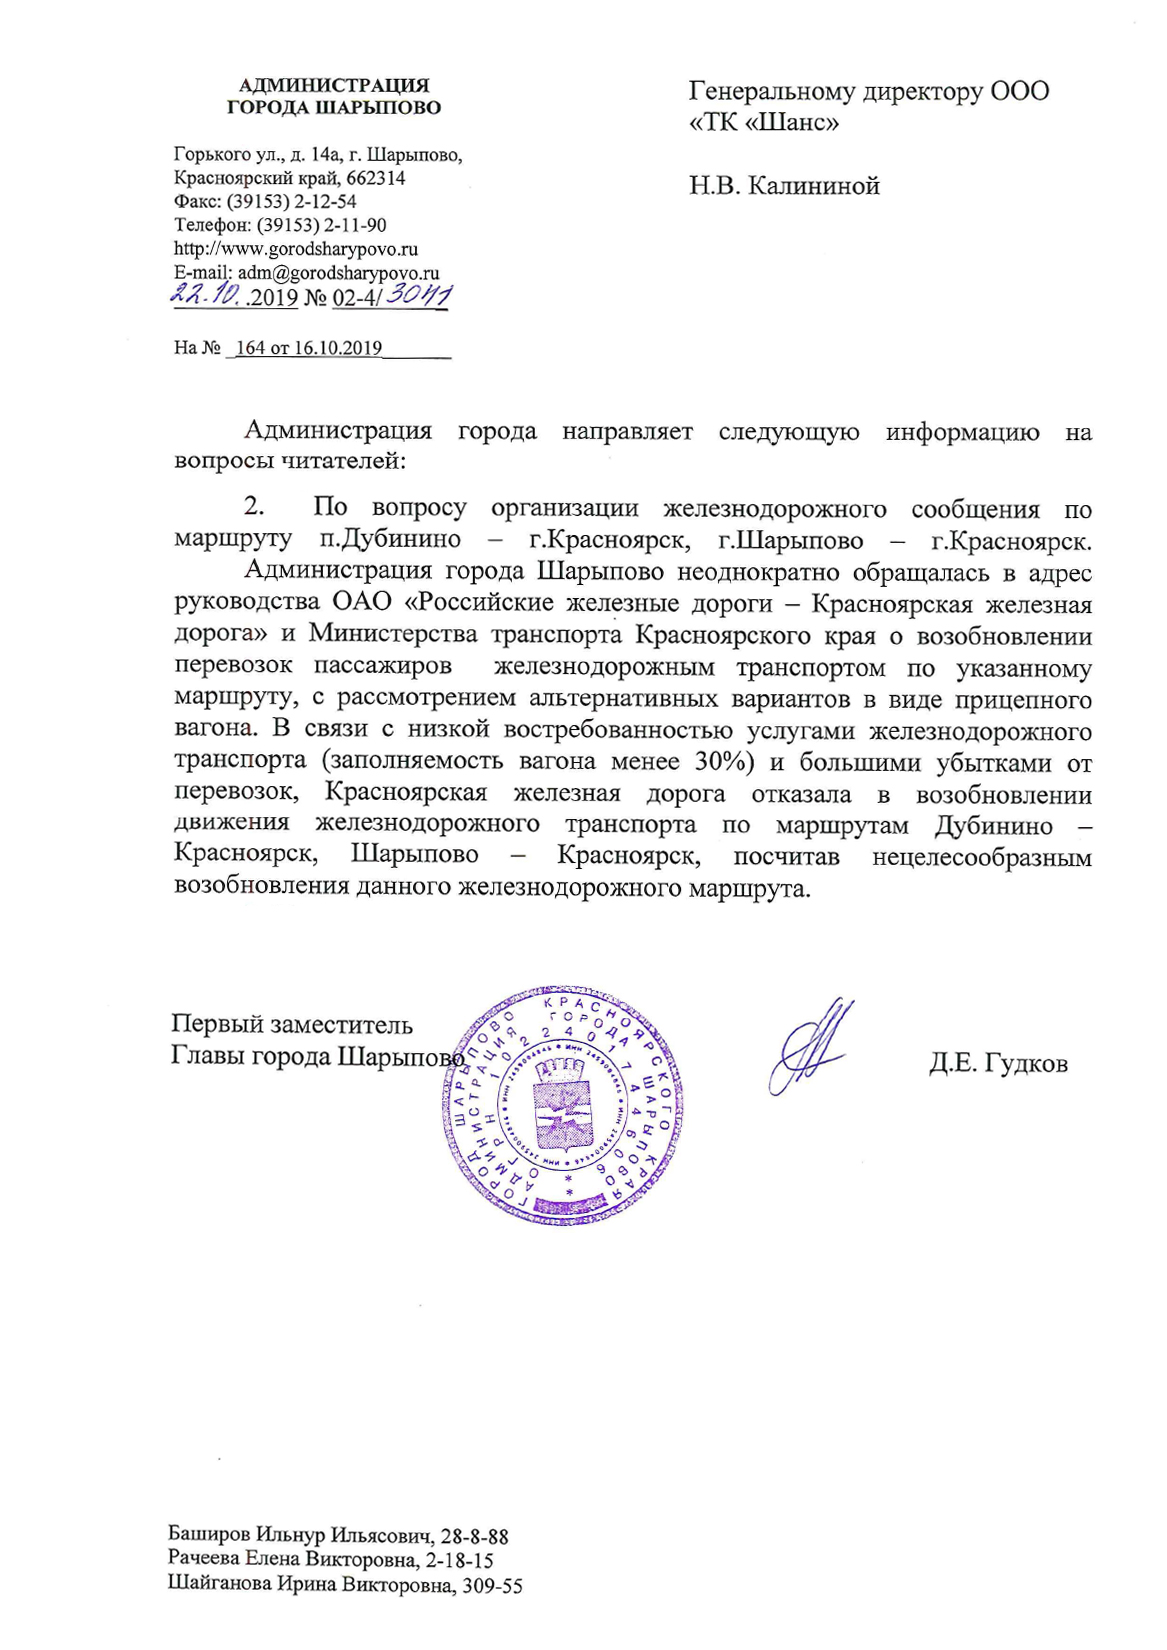 ответ администрации г.Шарыпово